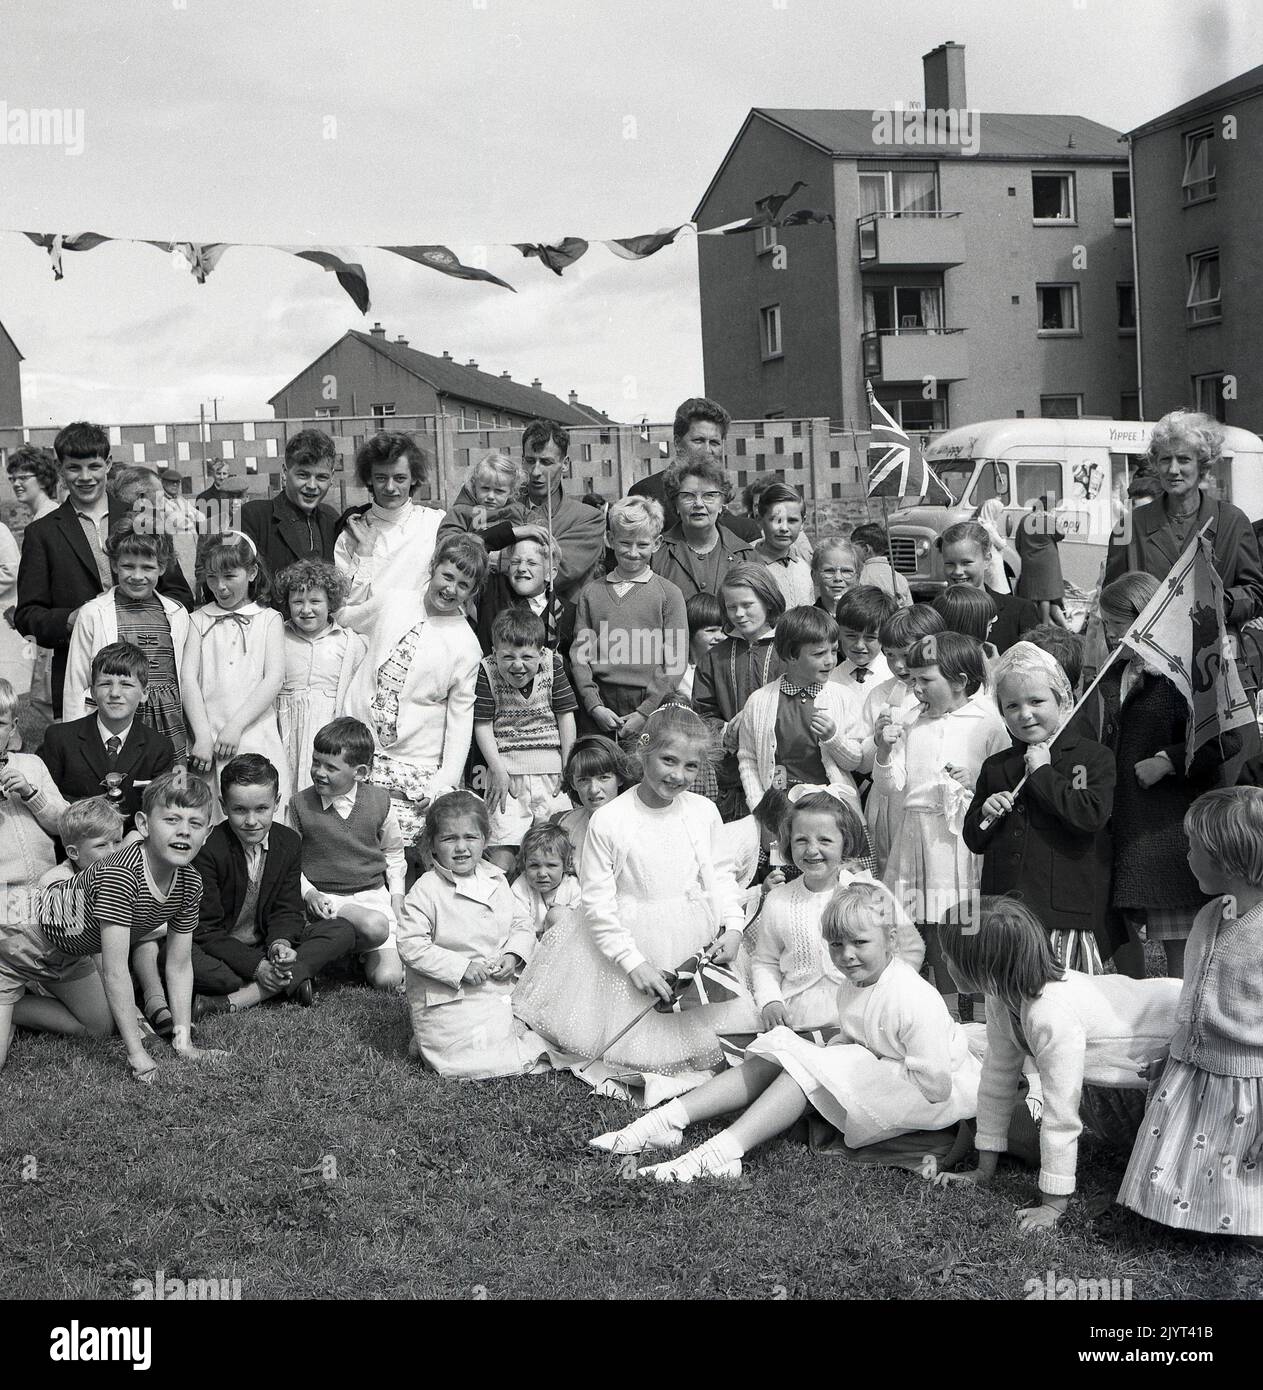 1965, historique, enfants et adultes se sont réunis pour une photo de groupe, certains tenant des drapeaux, y compris un drapeau syndical, après avoir participé à la journée de gala du North Queensferry, Fife, Écosse, Royaume-Uni. Une fourgonnette de glace « Whippy » de l'époque est vue en arrière-plan. Banque D'Images